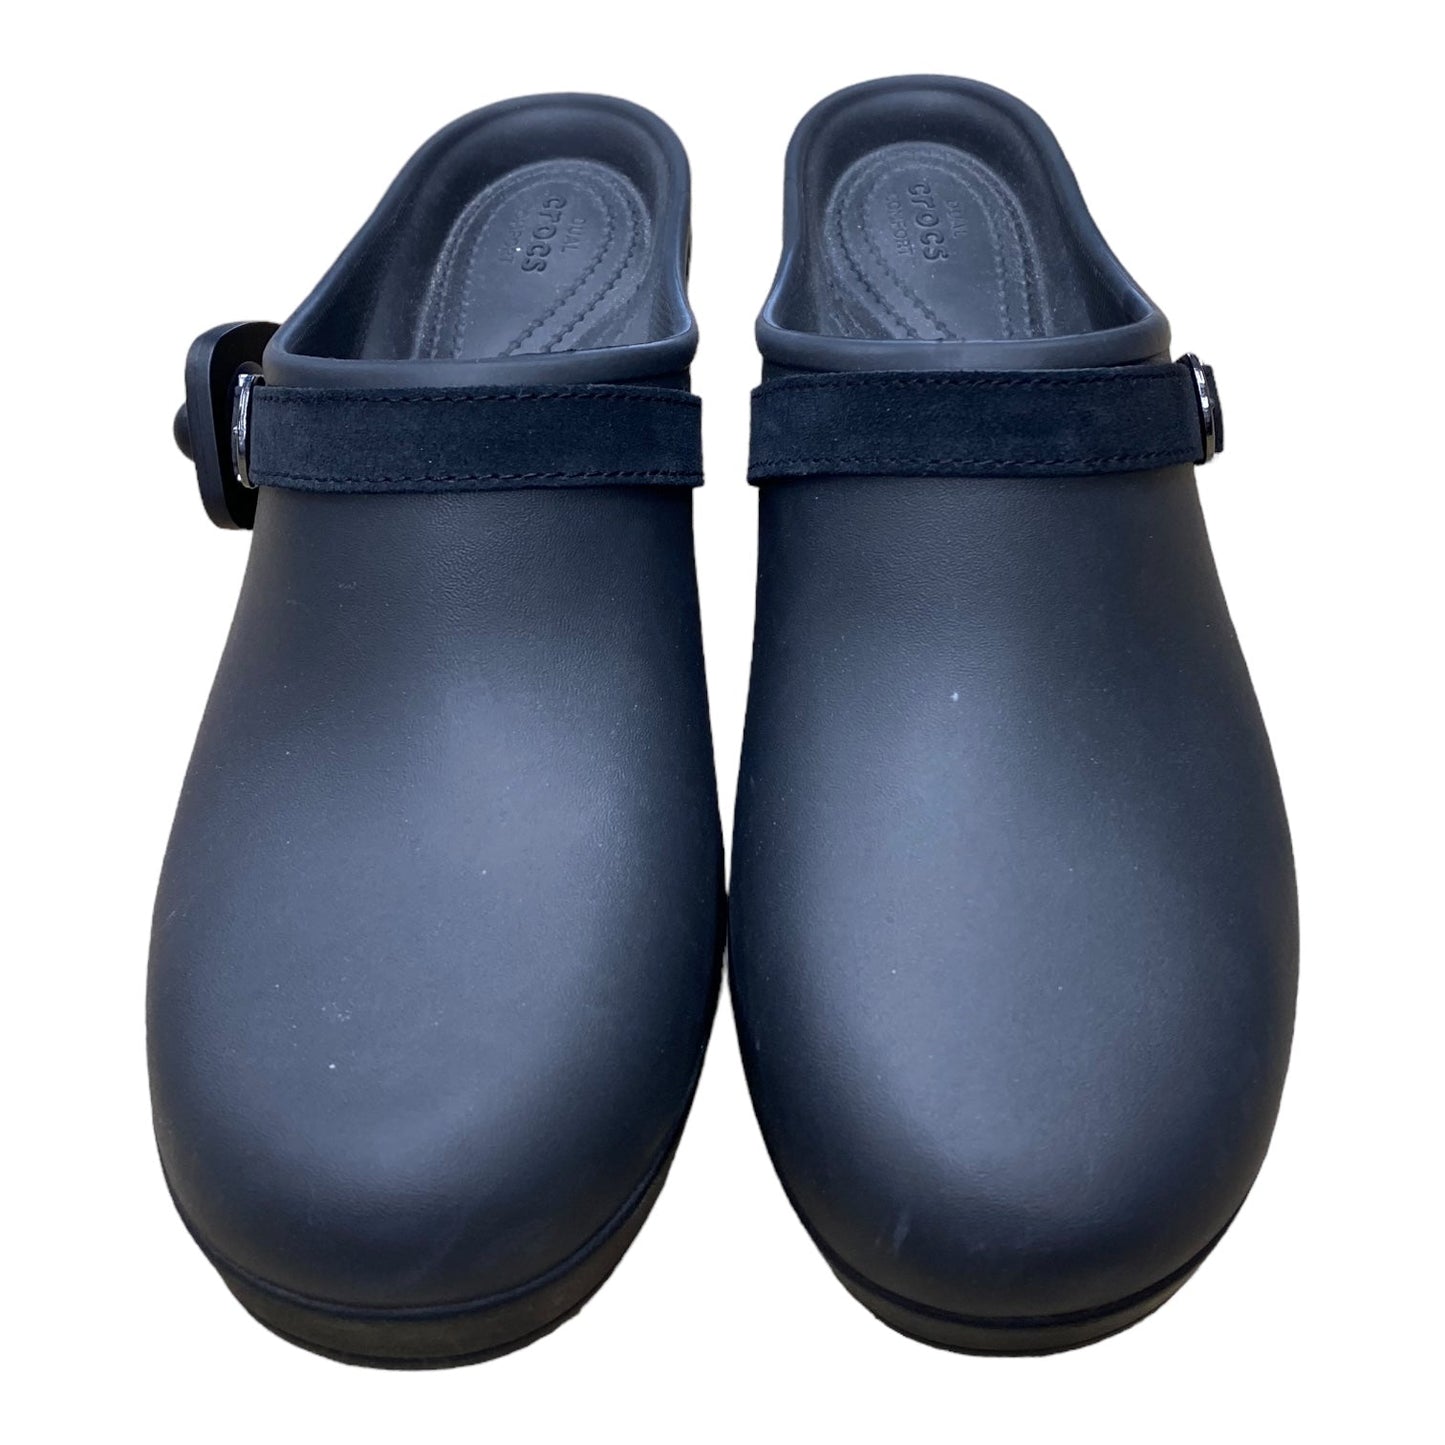 Black Shoes Heels Block Crocs, Size 11